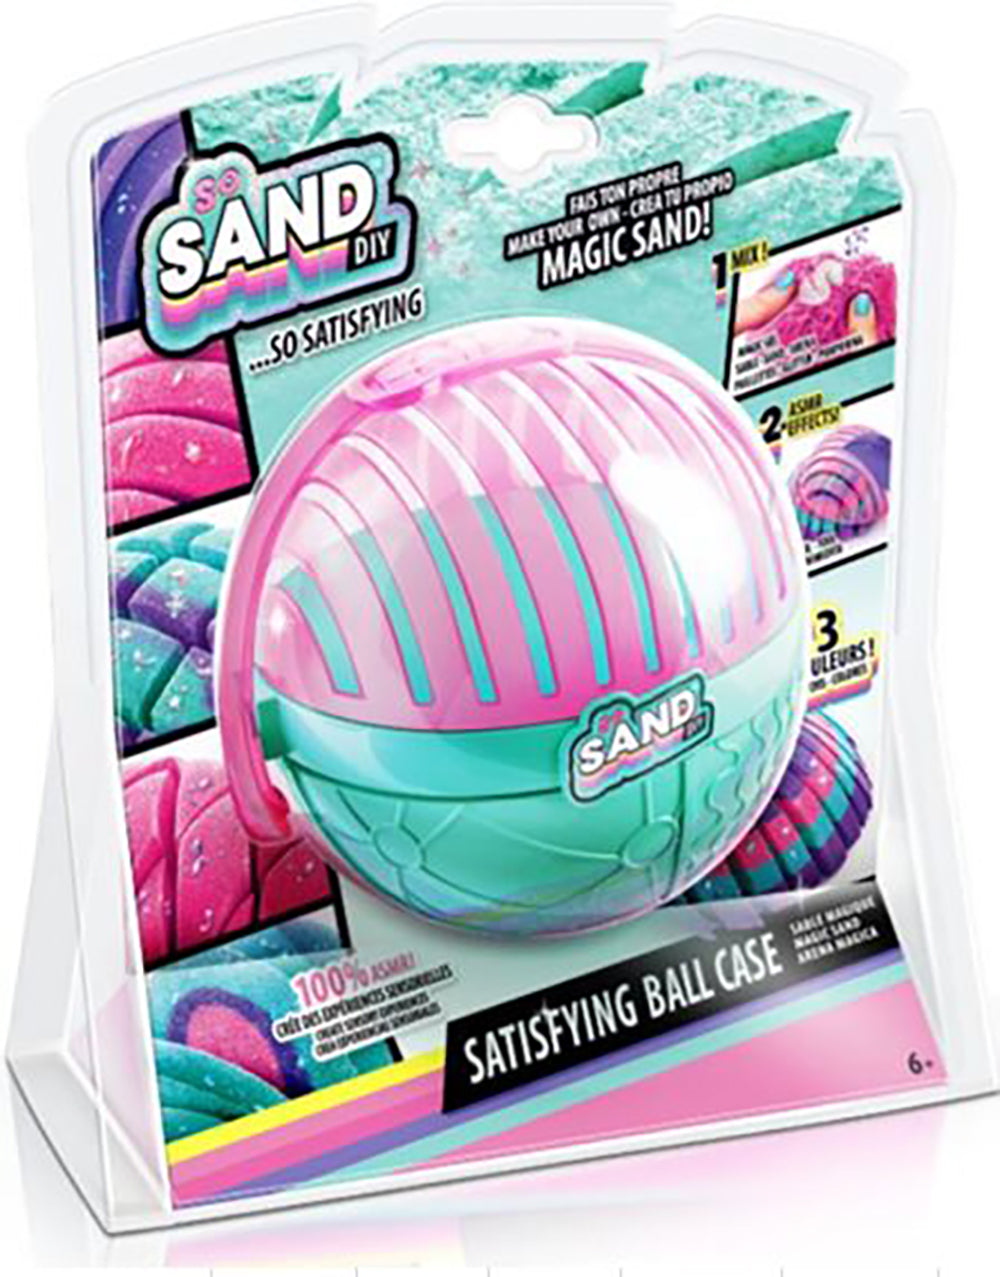 So Sand DIY- Boule de sable magique